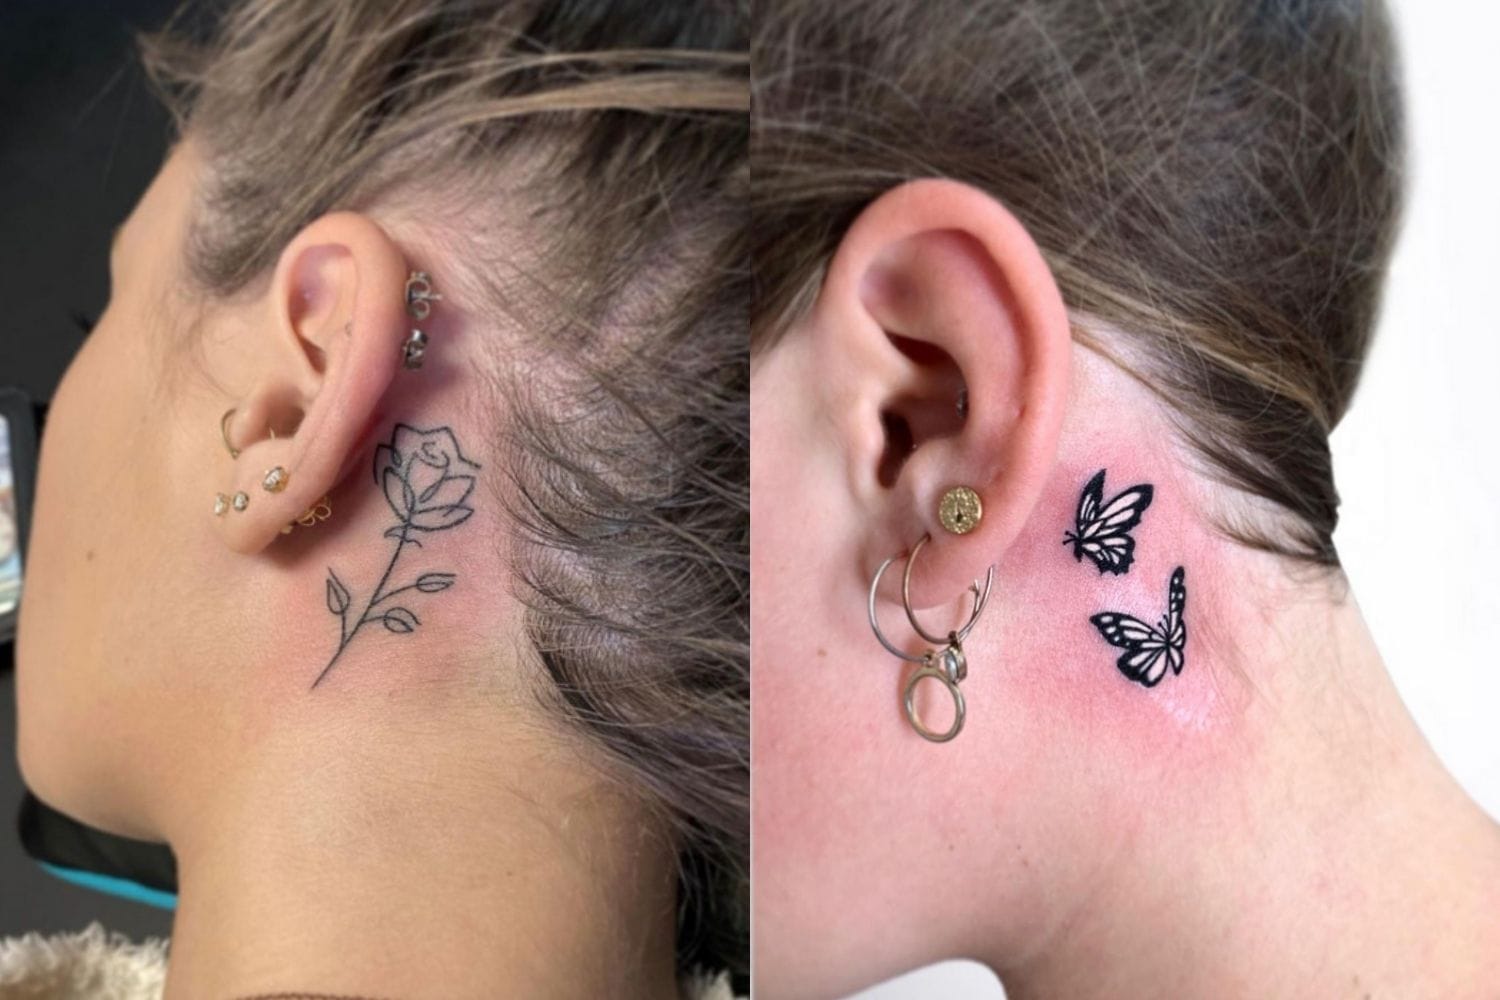 Details 96+ about tattoo near ear best - in.daotaonec